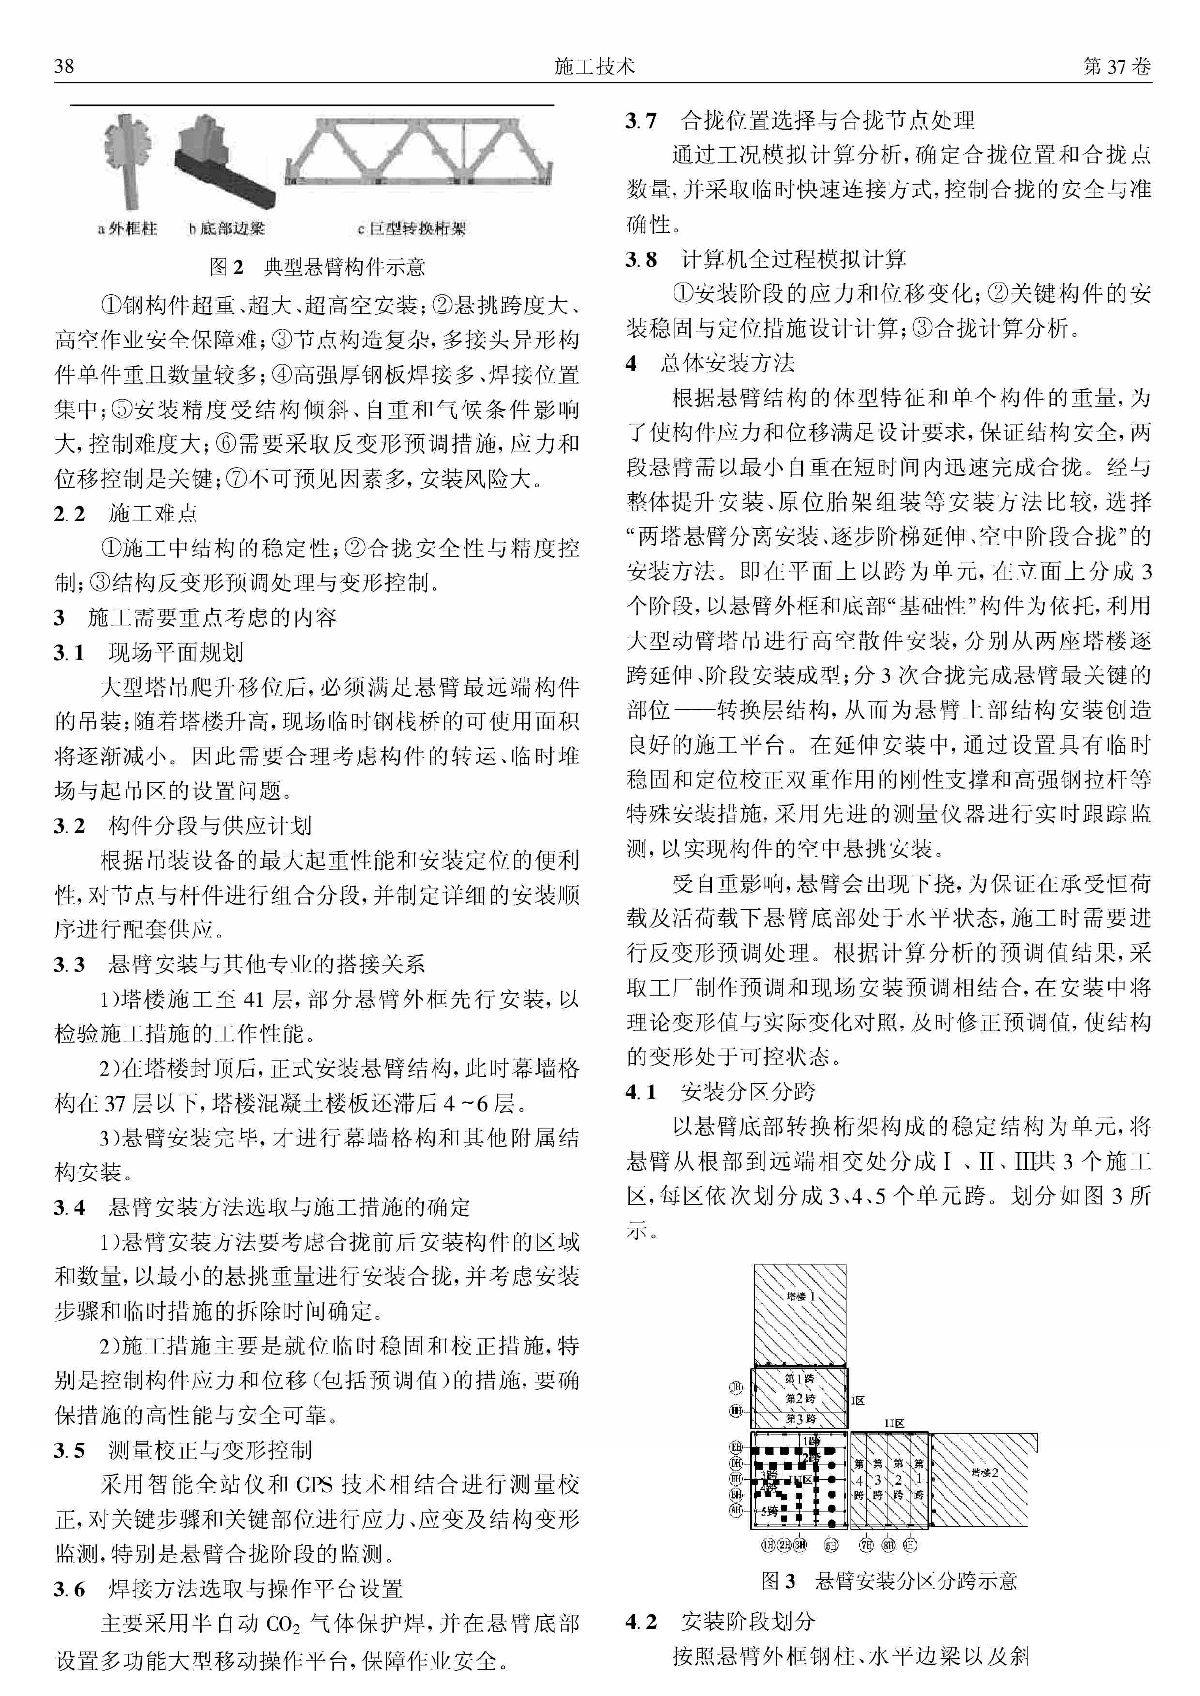 央视新台址主楼悬臂钢结构安装技术_陈韬-图二